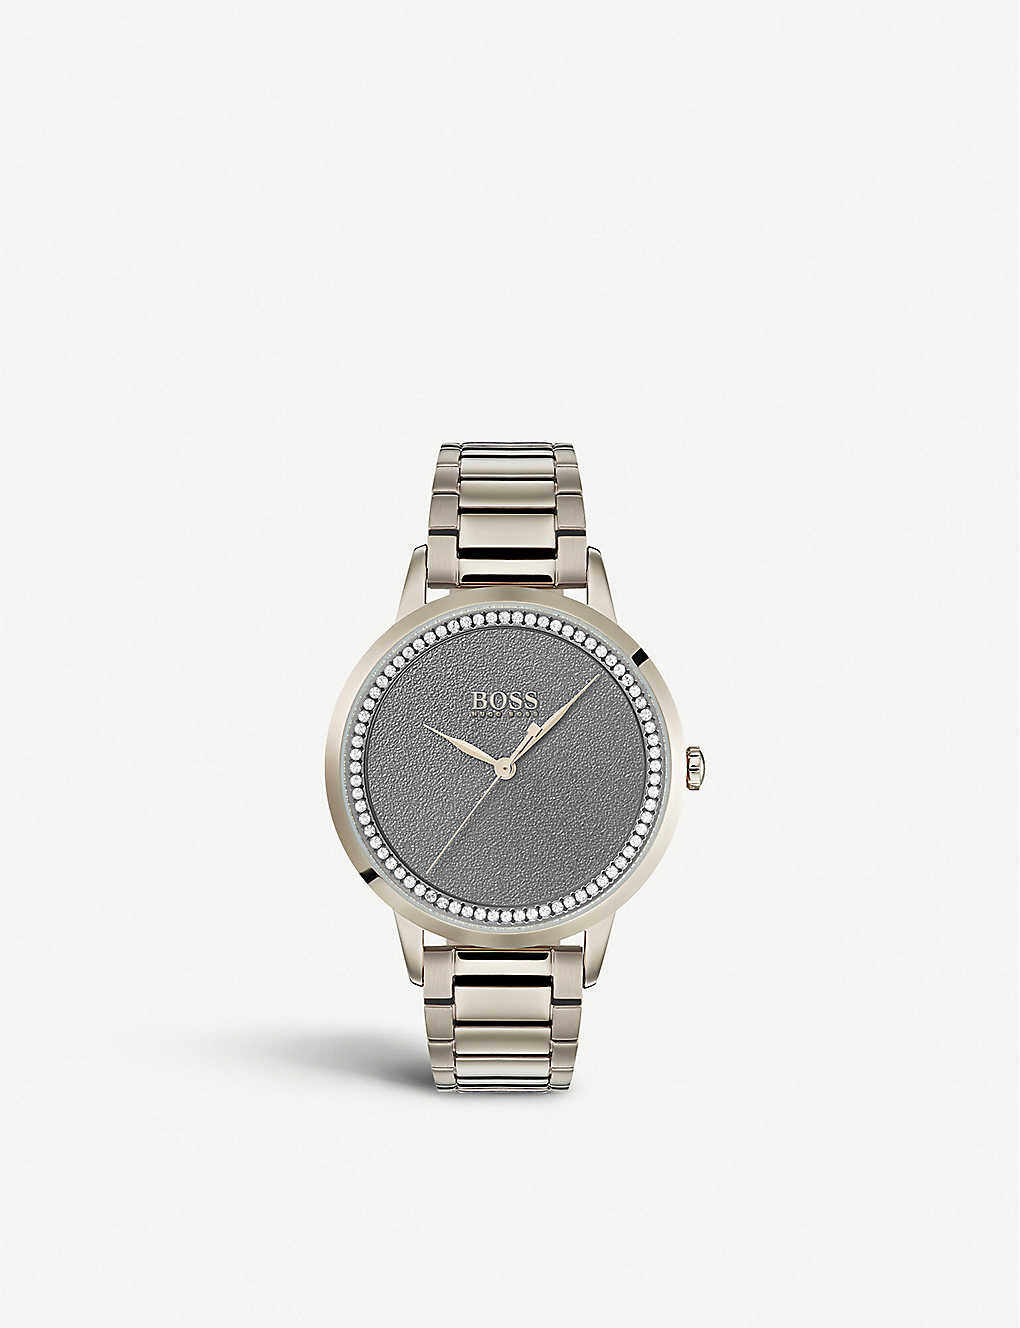 15款時裝品牌腕錶精選丨Gucci、Hermès、LV及Fendi腕錶是手袋以外最值得投資的時尚單品